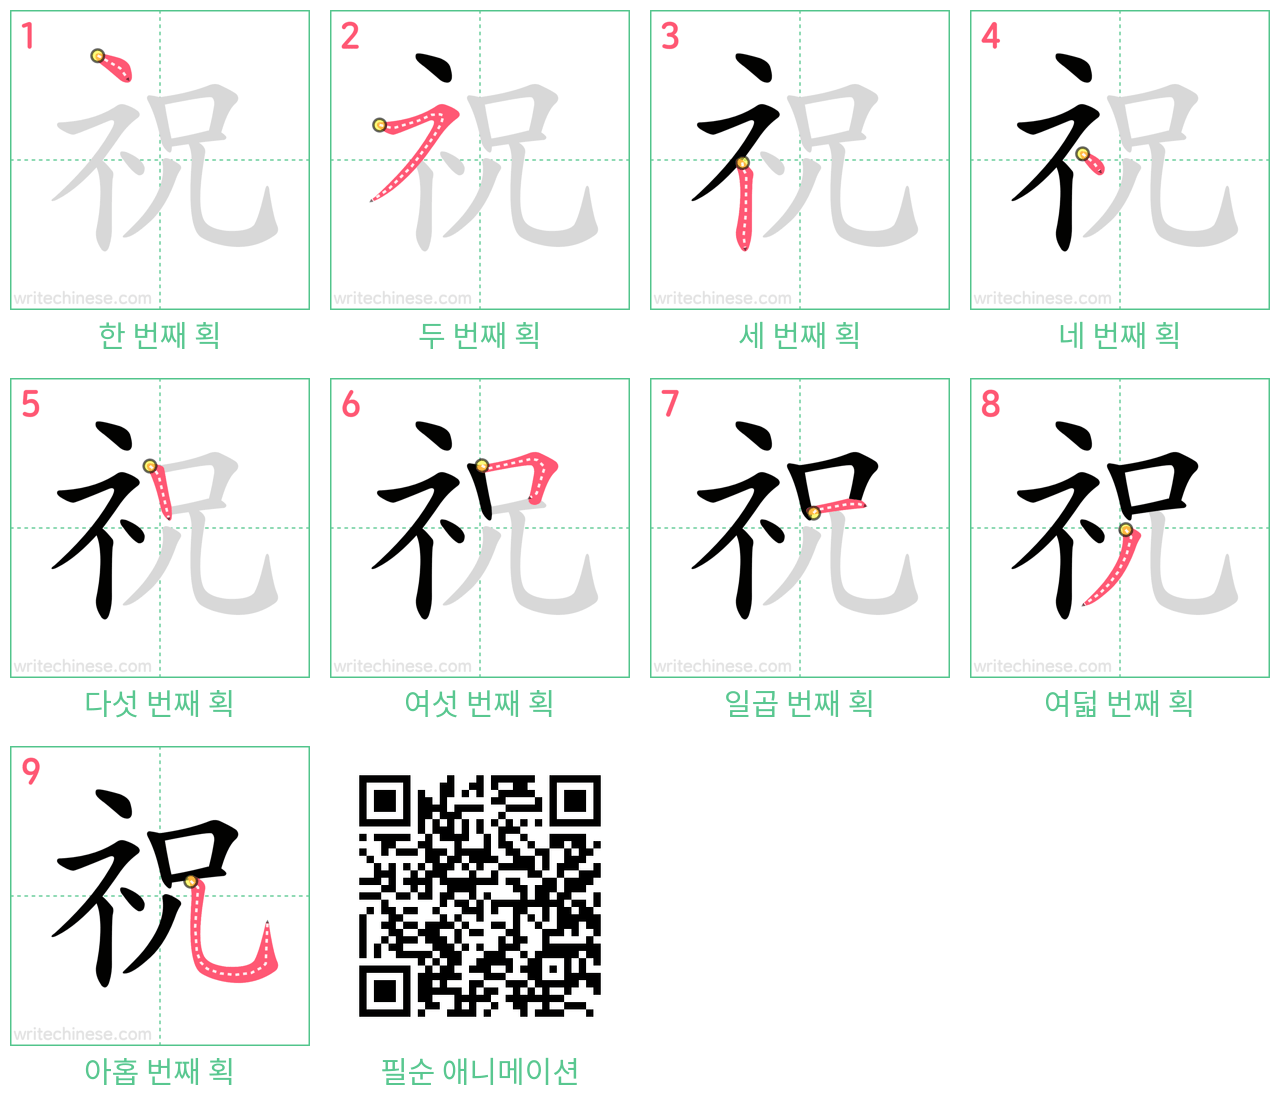 祝 step-by-step stroke order diagrams